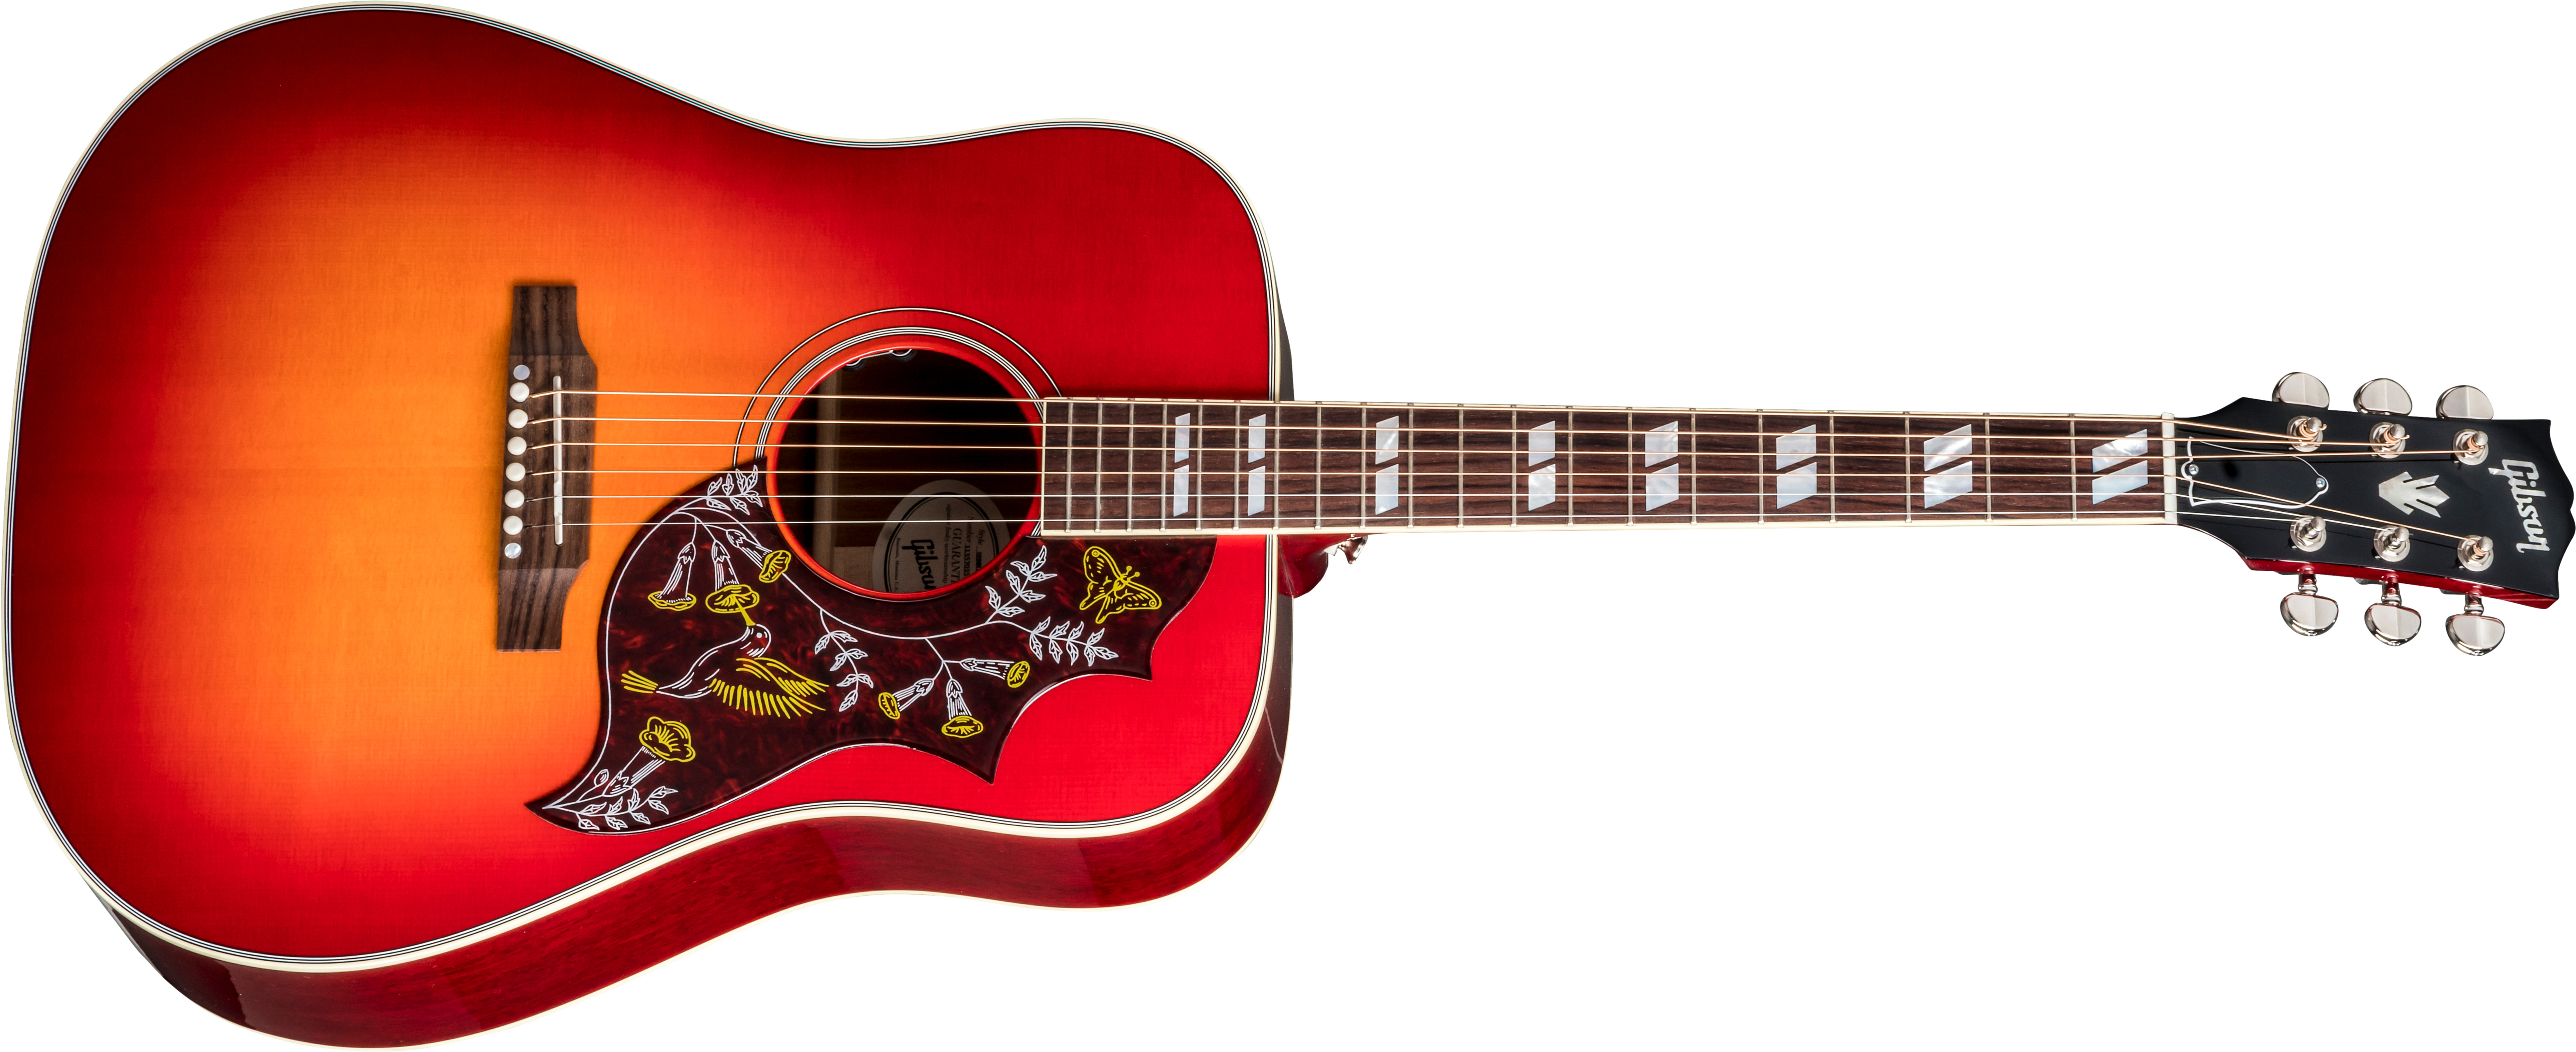 Gibson Hummingbird 2019 Dreadnought Epicea Acajou Rw - Vintage Cherry Sunburst - Guitarra acústica & electro - Main picture